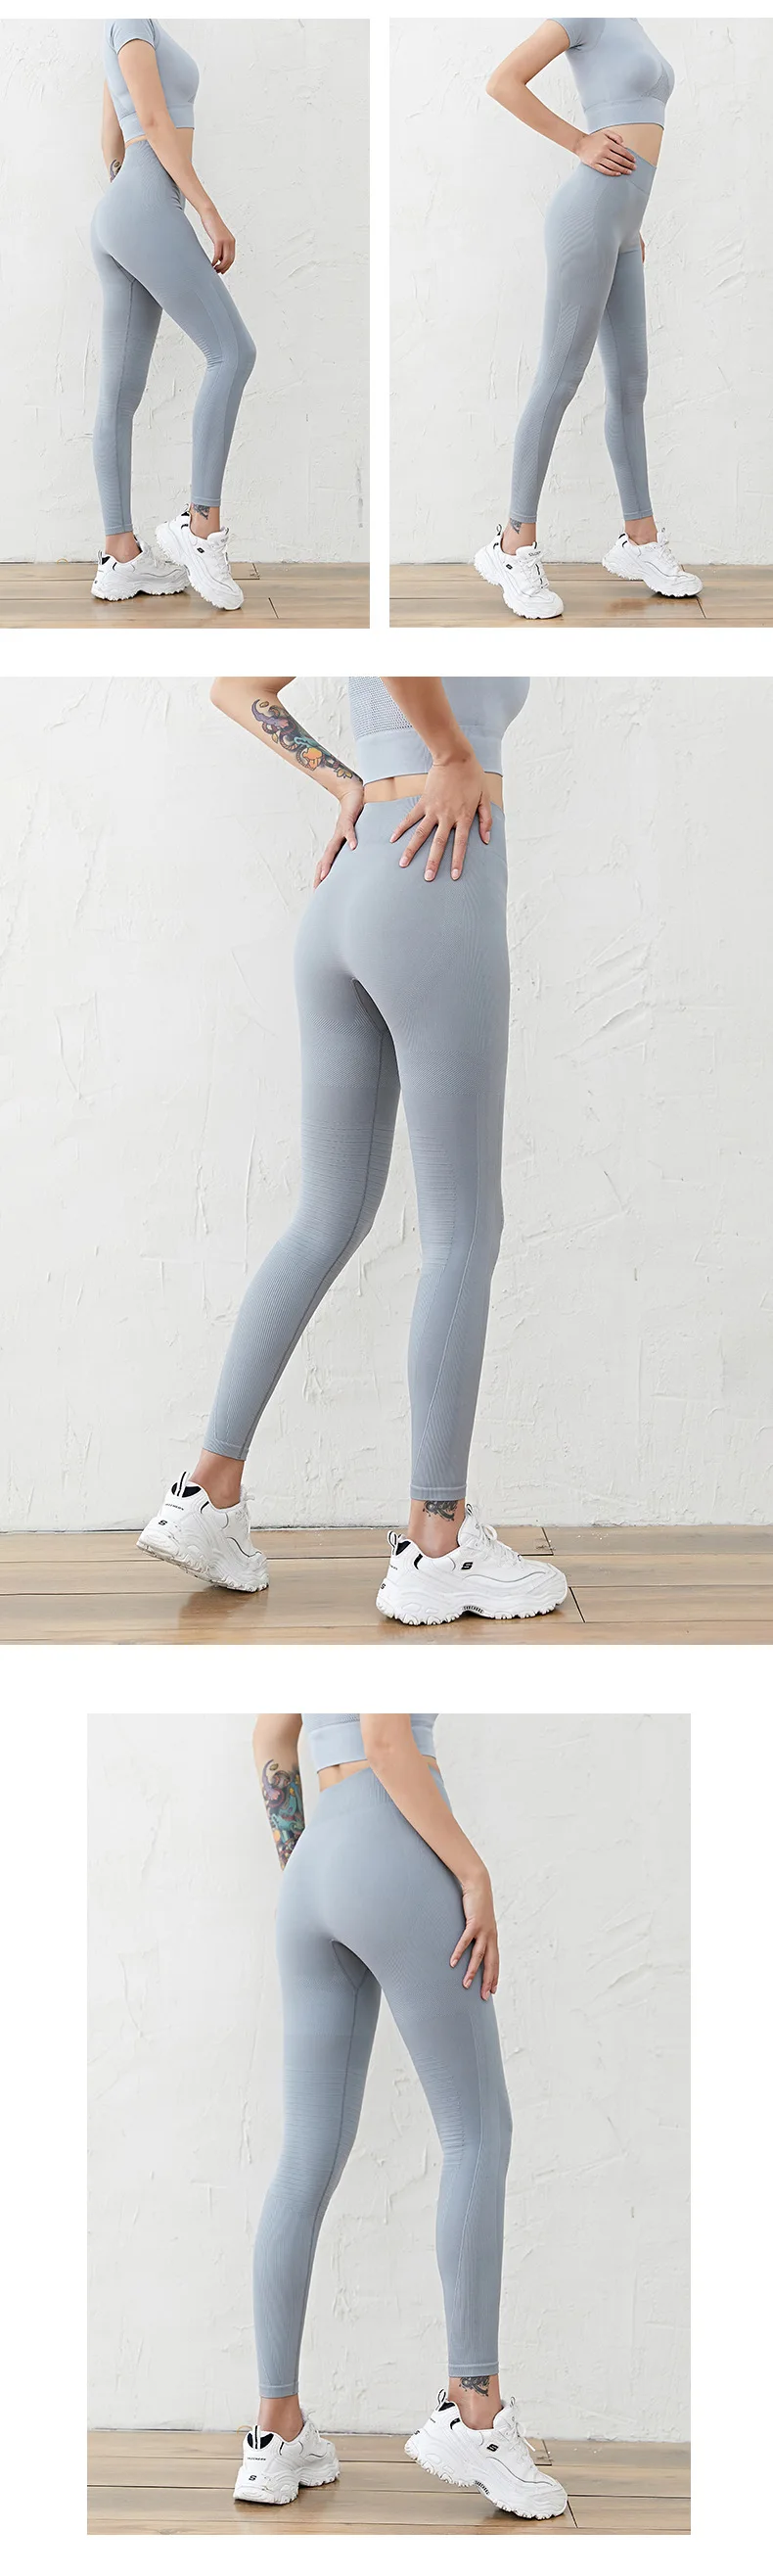 Новый стиль бесшовные утягивающие ягодицы подтягивающие беговые штаны для йоги персиковые брюки для фитнеса женские брюки с высокой